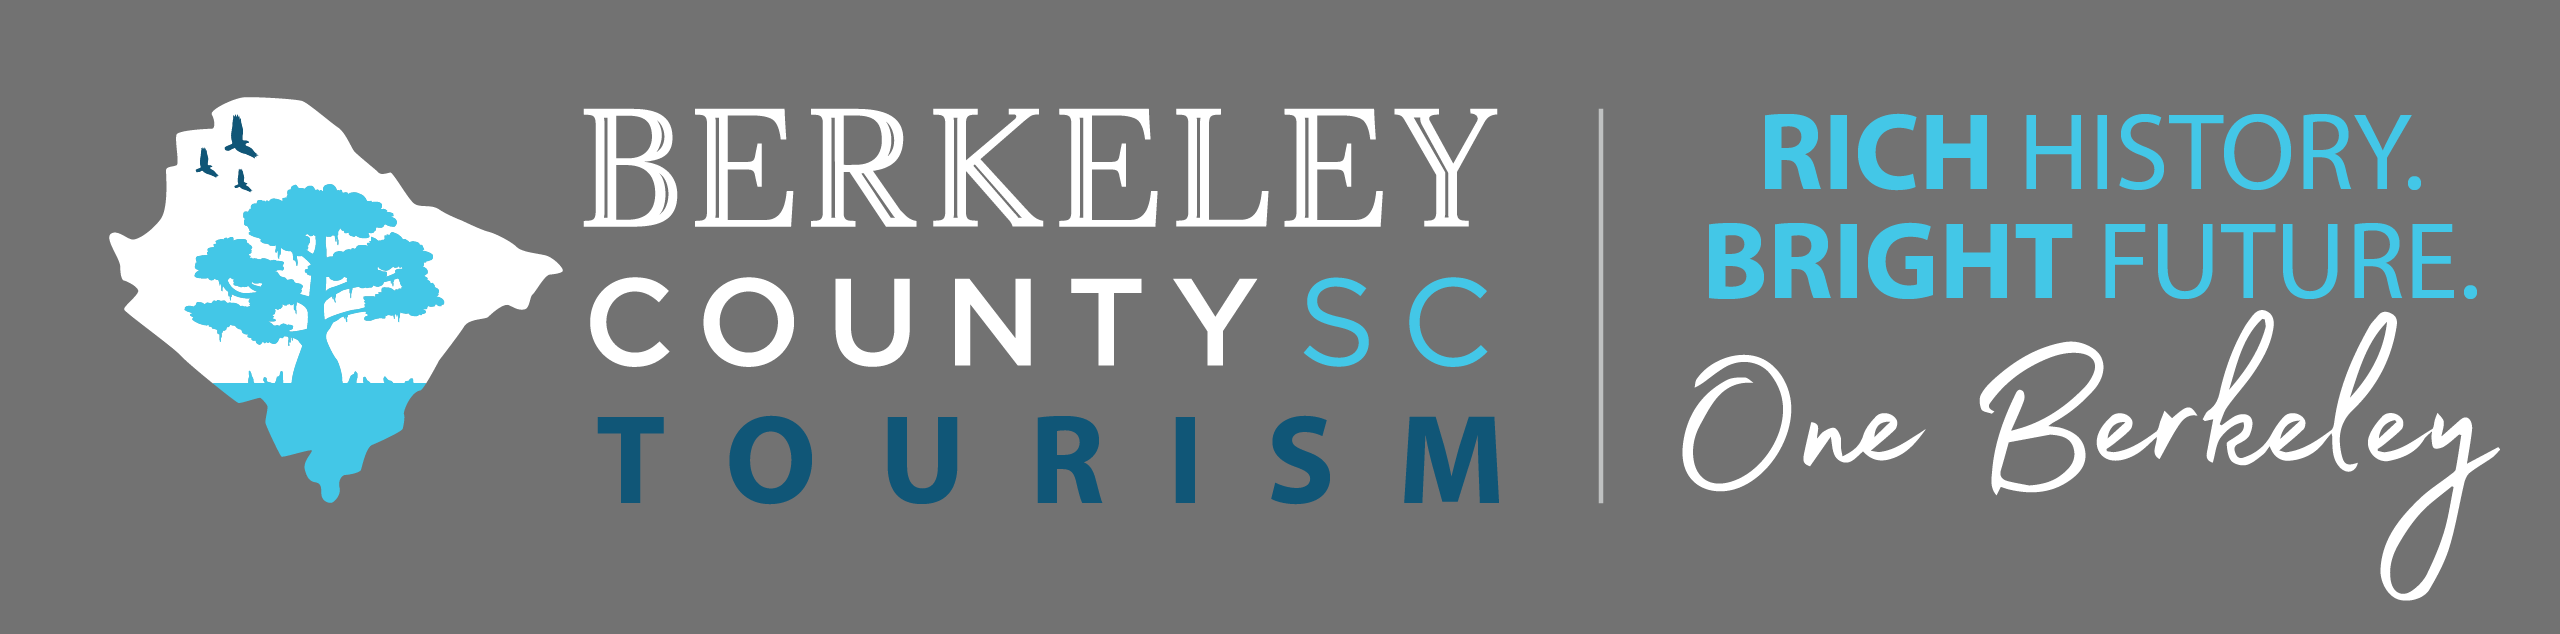 Berkeley County Tourism logo